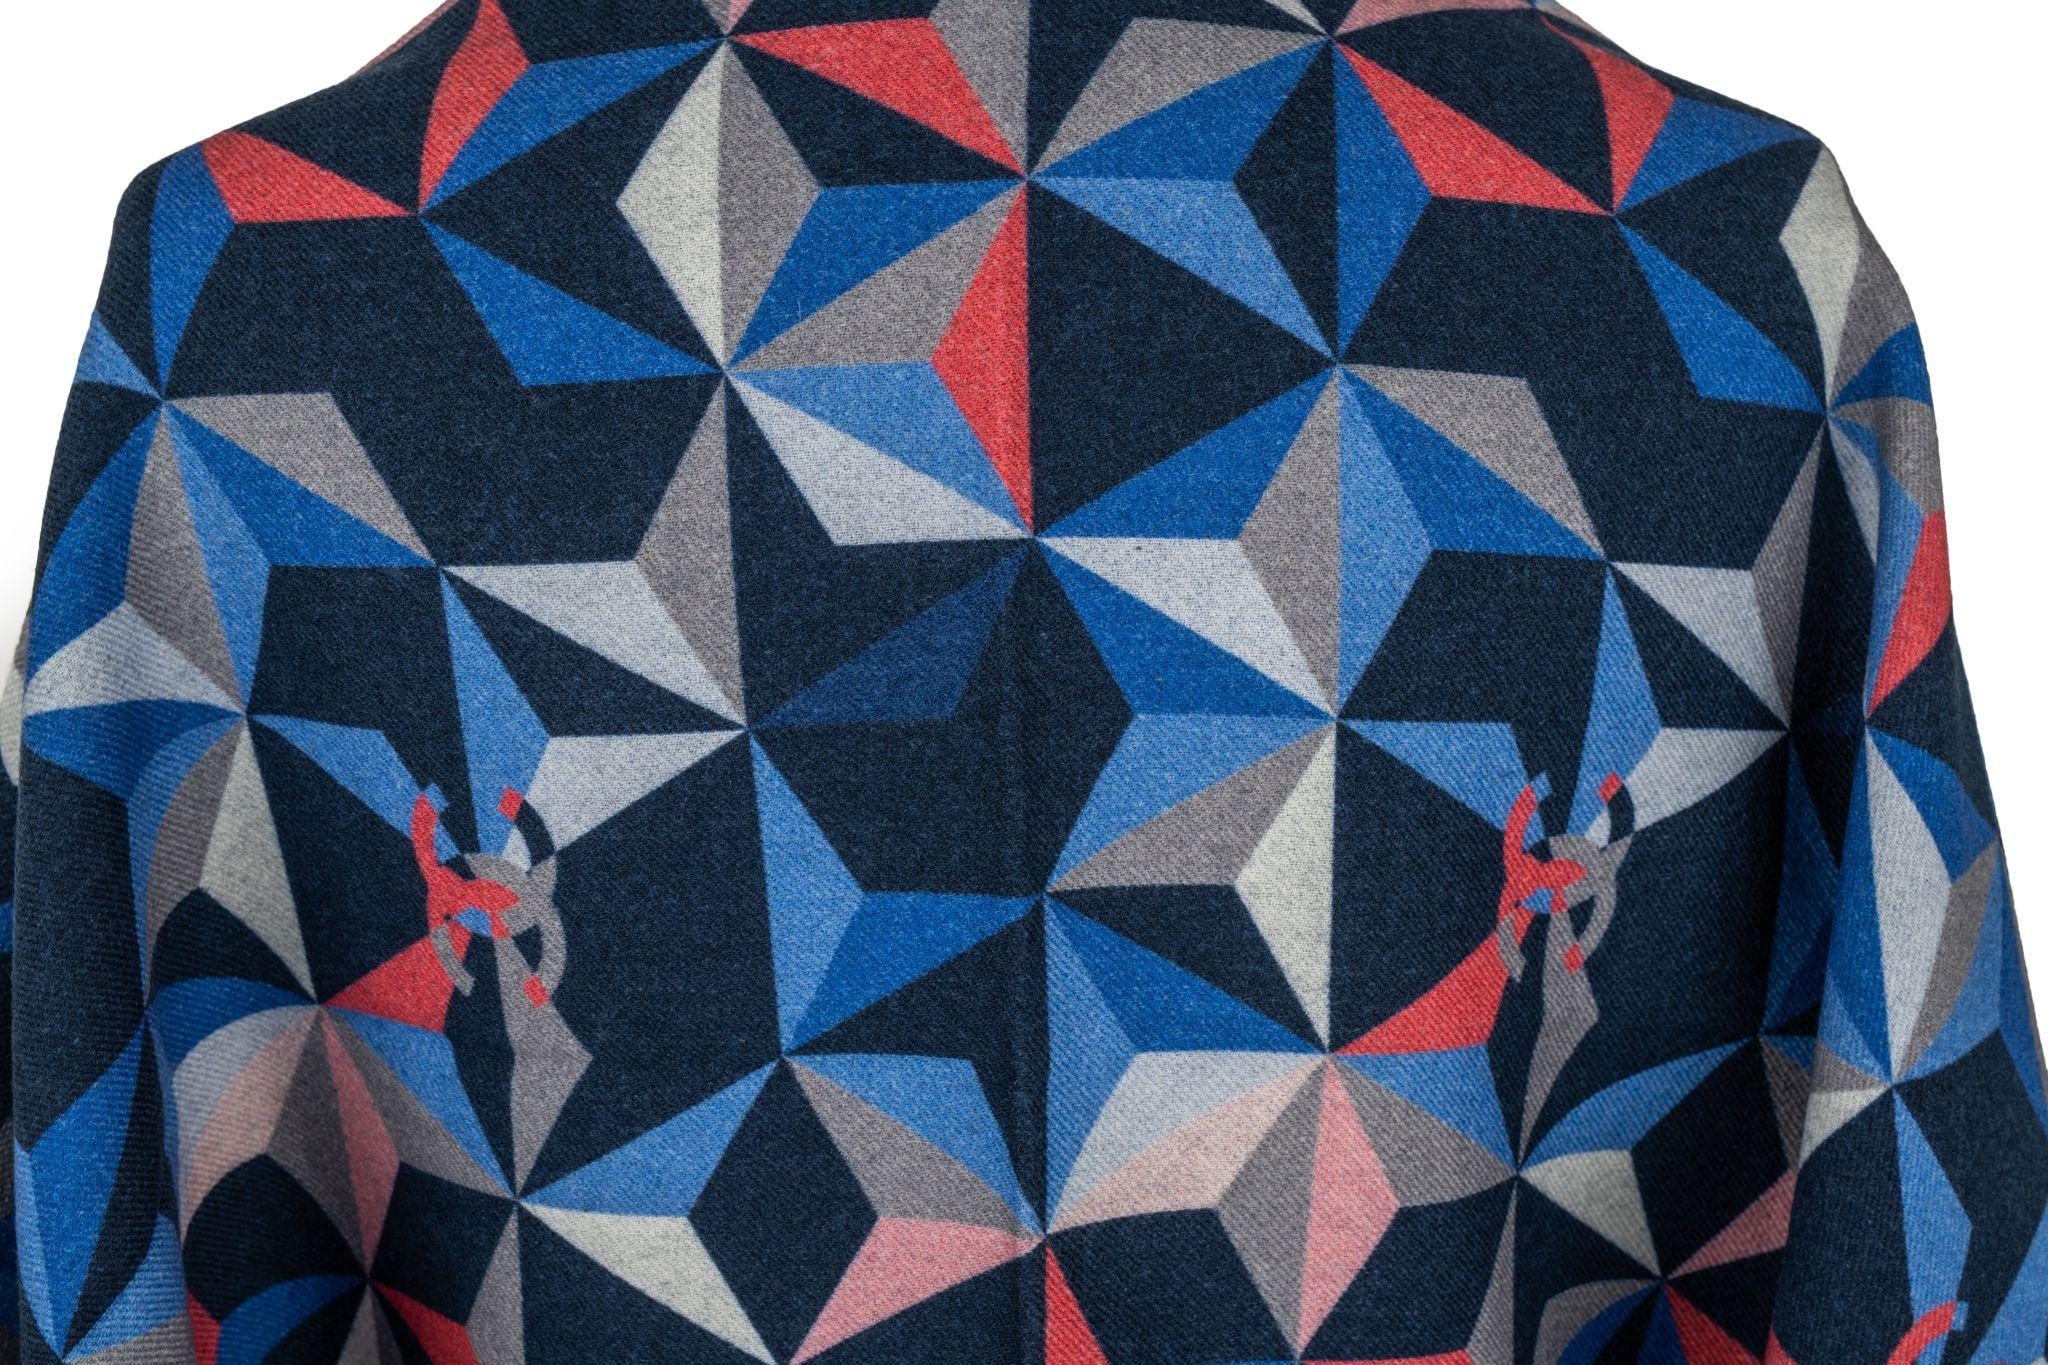 Châle en cachemire de Chanel avec motif géométrique multicolore. L'article est en état neuf.